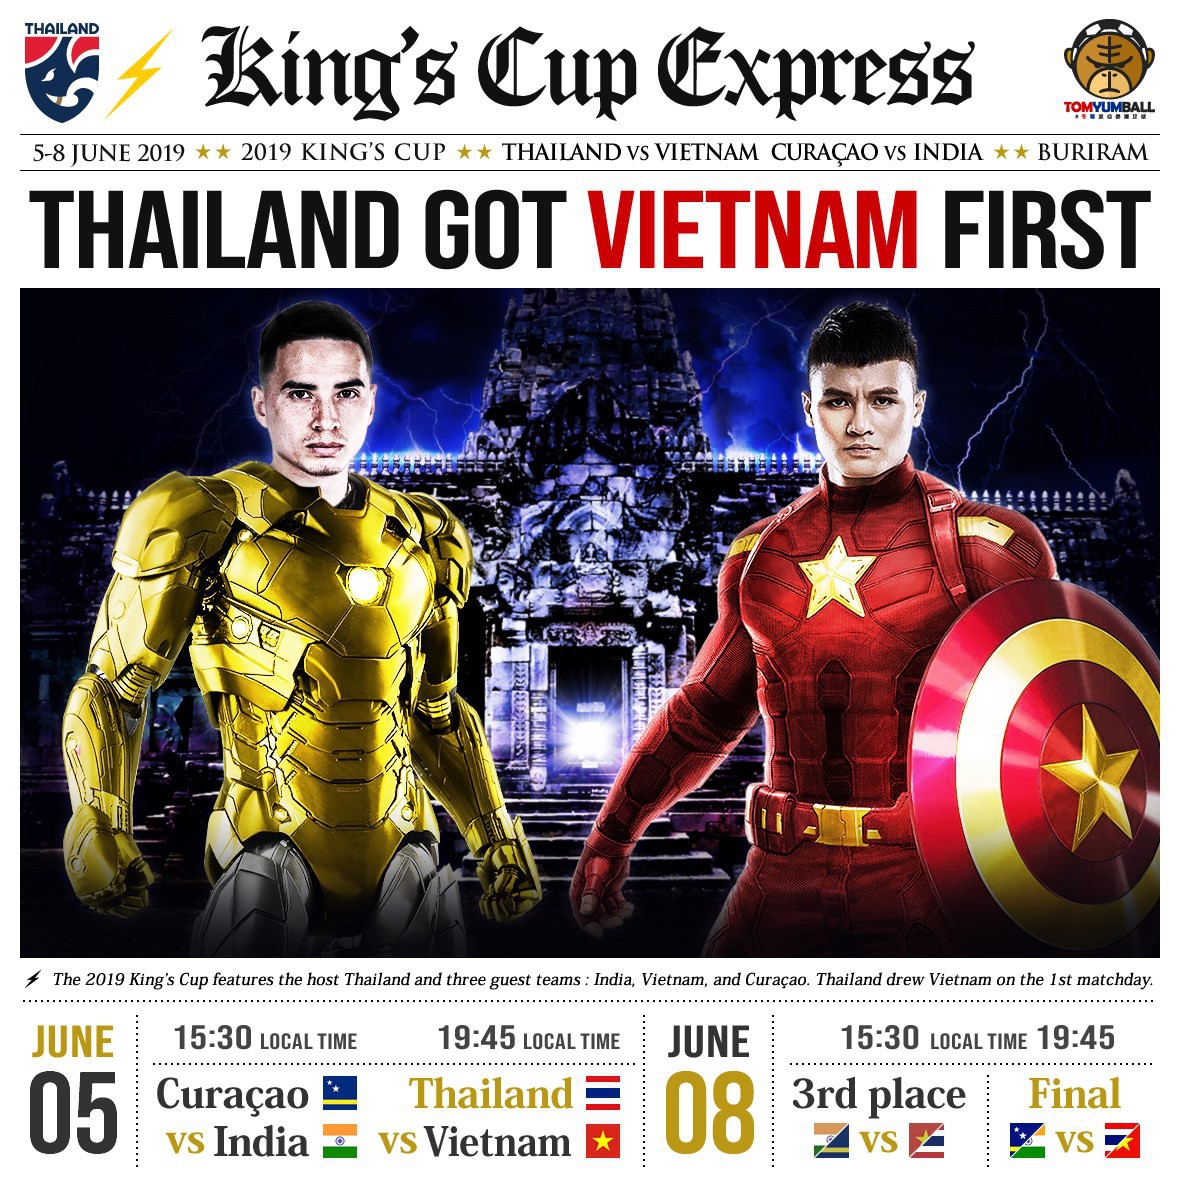 Fan Trung Quốc hô biến Quang Hải thành Captain Việt Nam đấu Iron man Thái Lan cực chất - Ảnh 1.